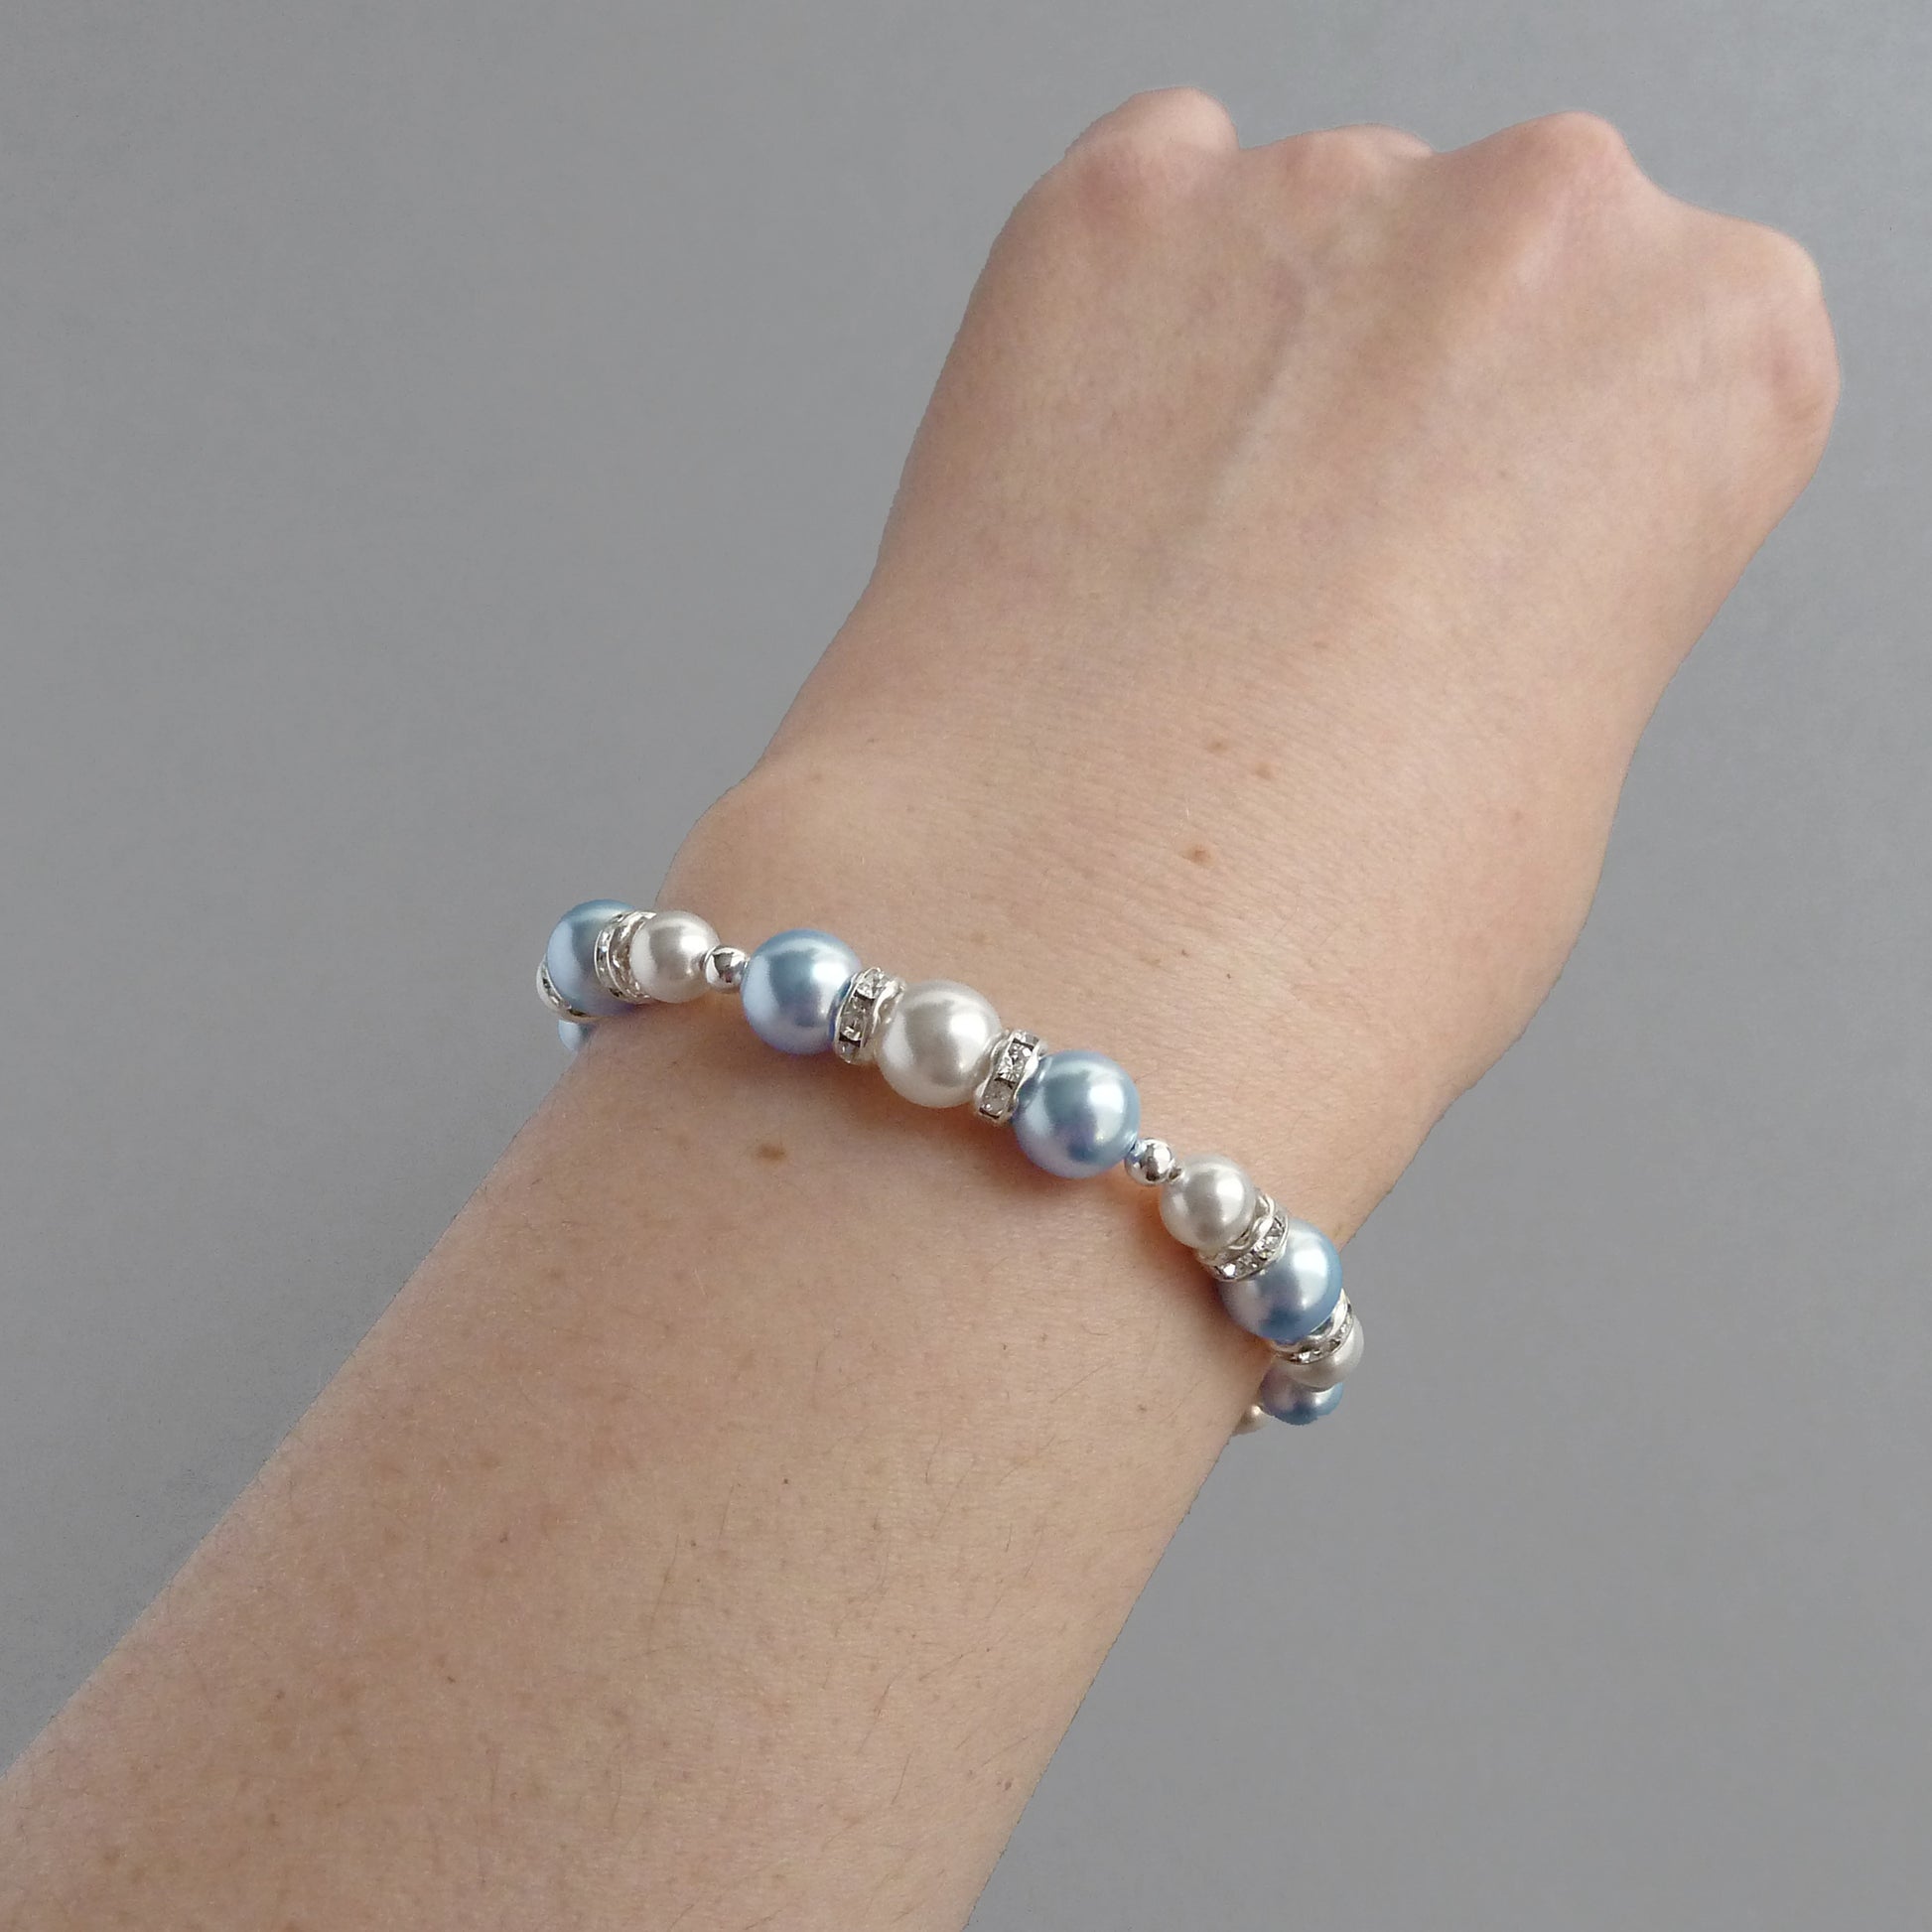 Baby blue pearl bracelets